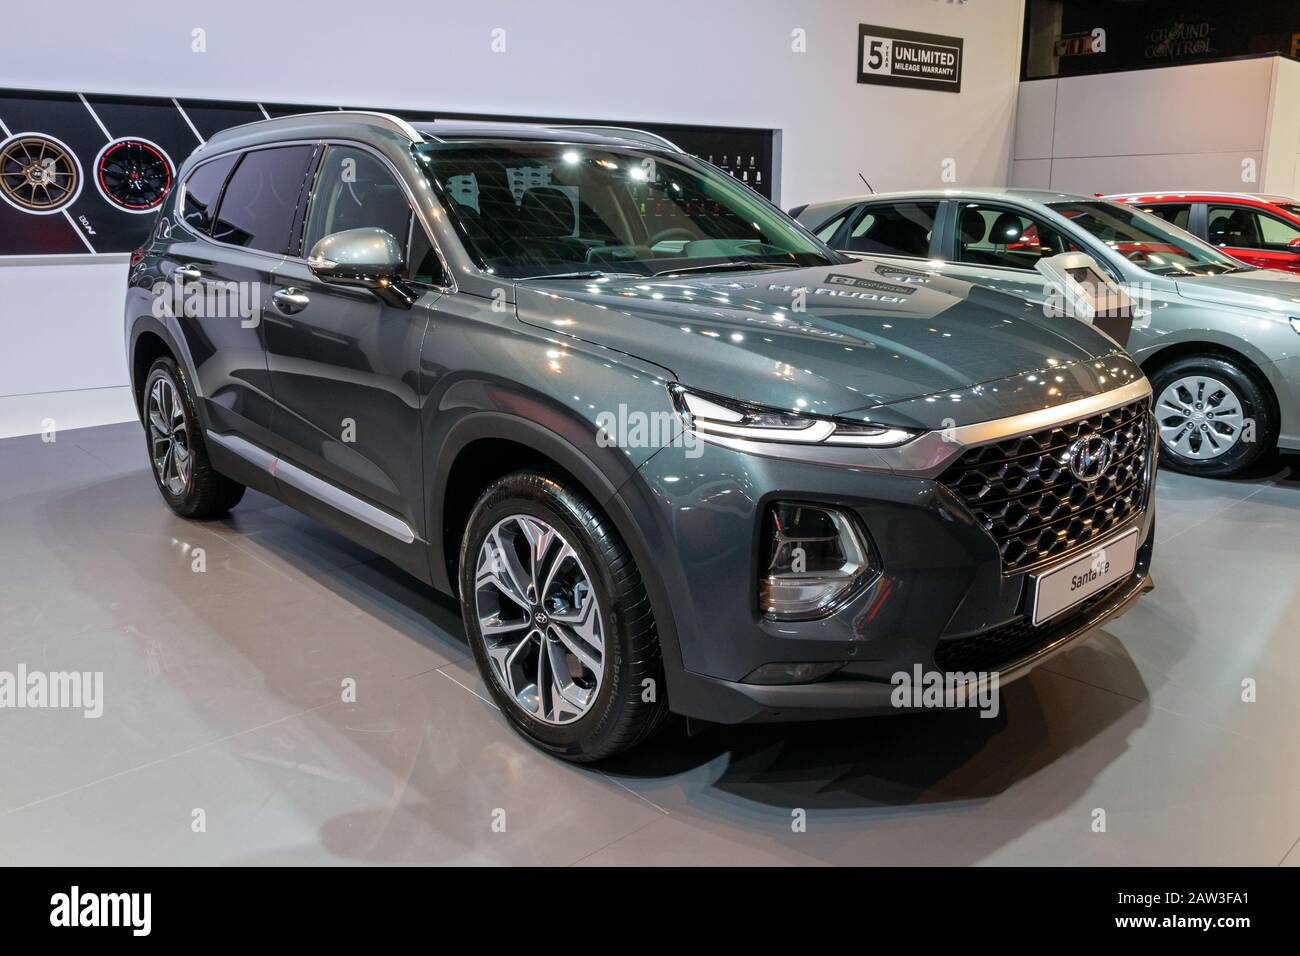 Bruxelles - 9 GENNAIO 2020: Nuovo modello di auto Hyundai Santa Fe presentato al Motor Show di Bruxelles Autosalon 2020. Foto Stock